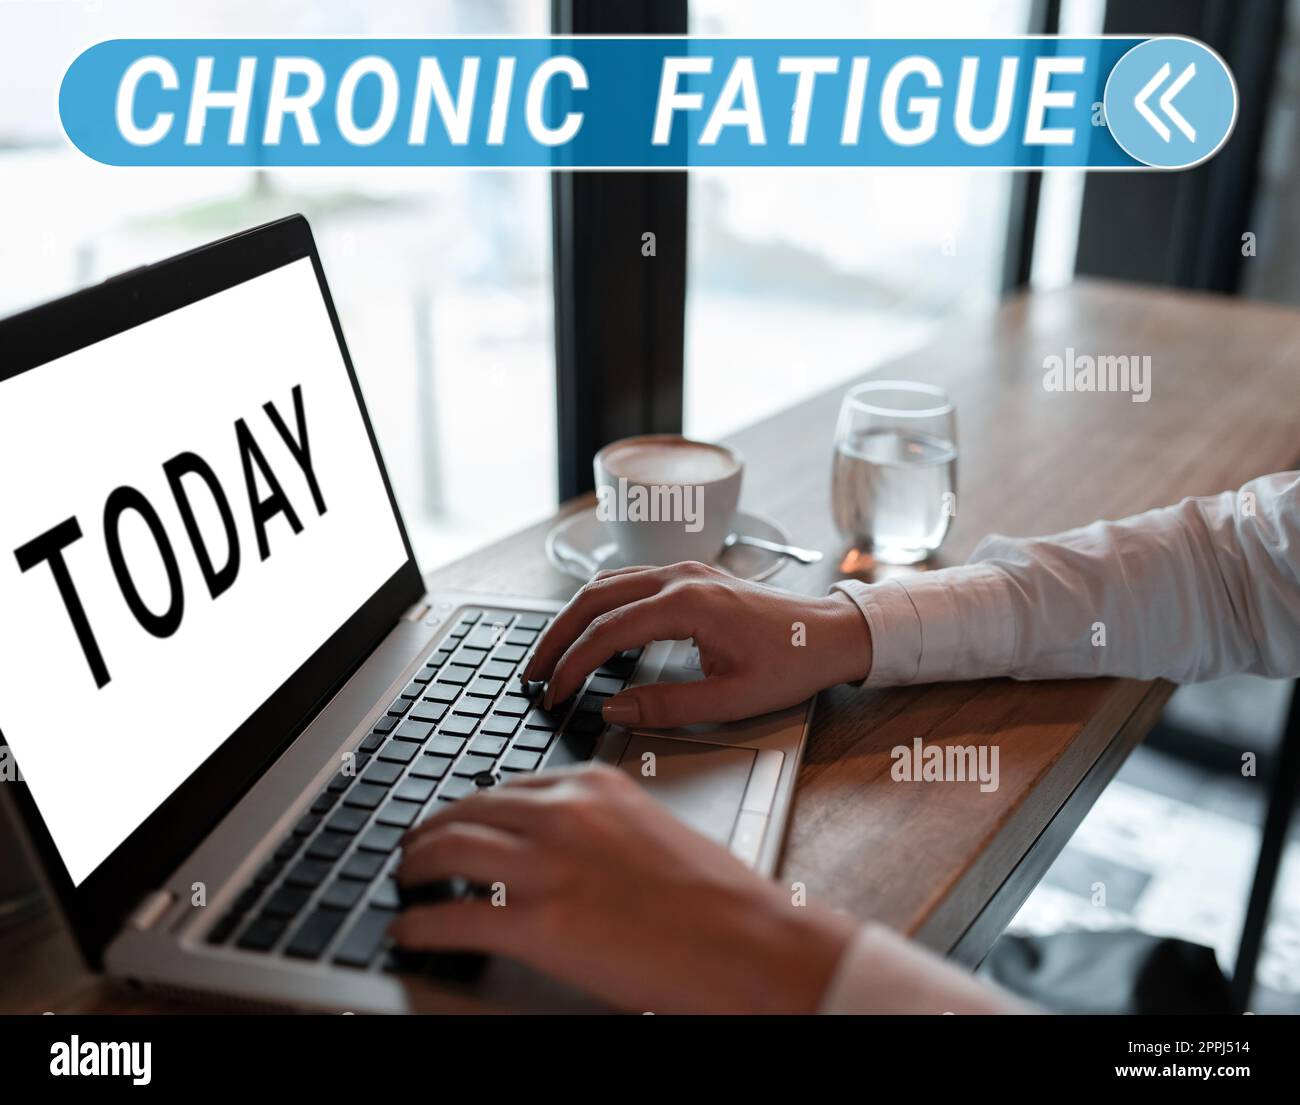 Affiche indiquant la fatigue chronique. Mot pour Une maladie ou une condition qui dure plus longtemps Banque D'Images